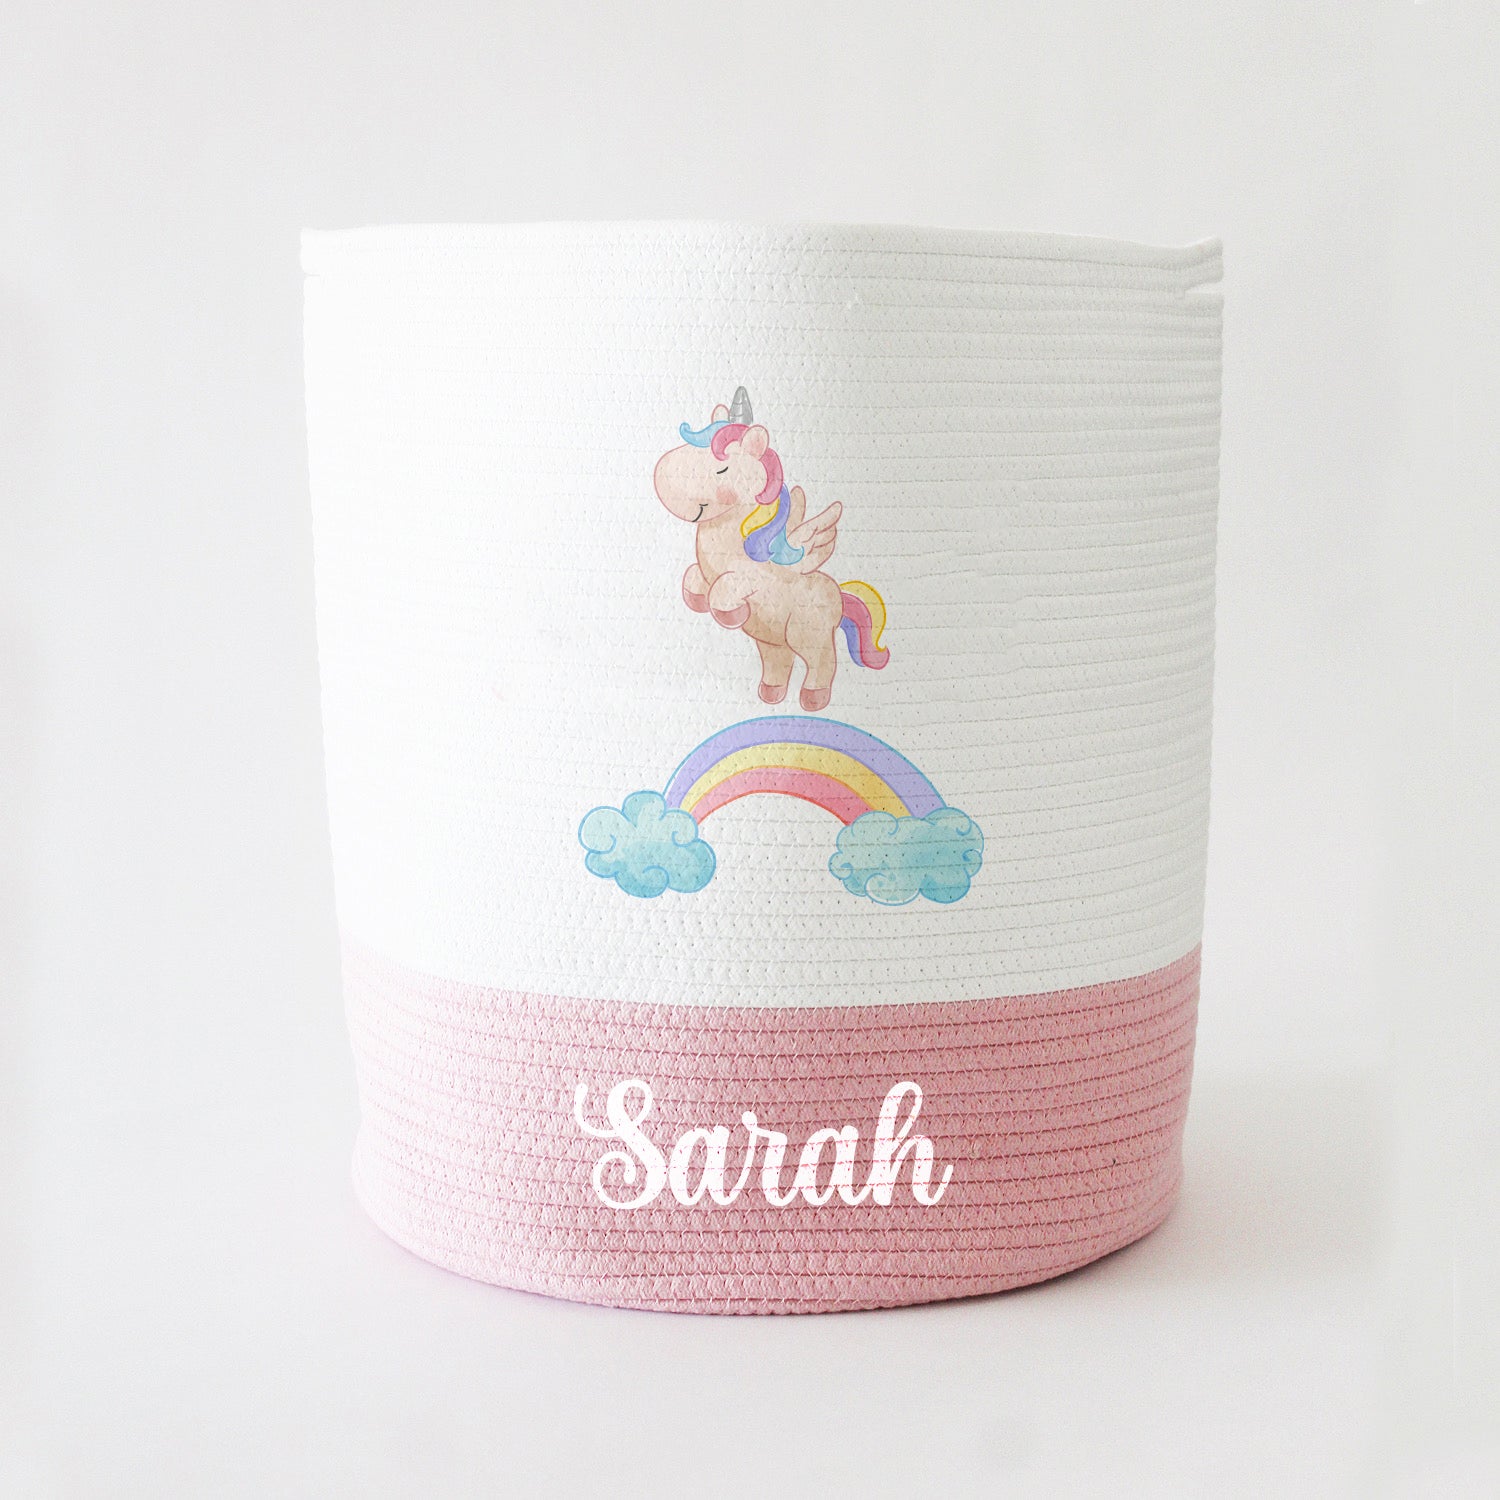 Personalized Storage Basket - Large - Unicorn Theme